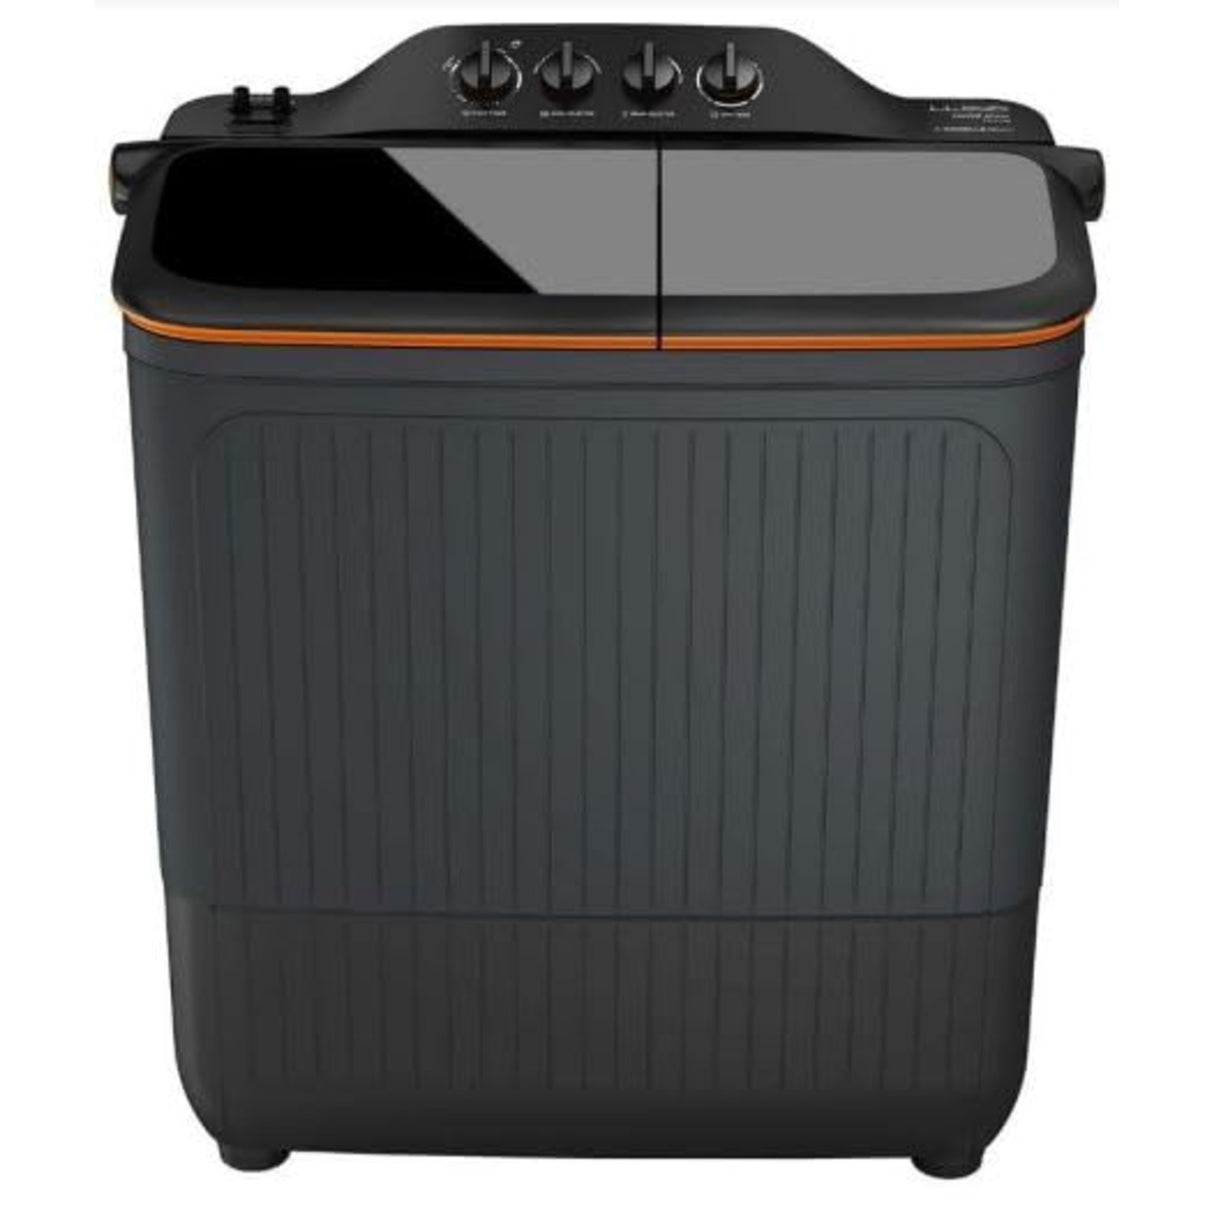 Havells-Lloyd Elante Pluss 12 Kg 5 Star Semi-Automatic Top Load Washing Machine (GLWS125EPHVG Dark Grey Tub with Orange Lids)